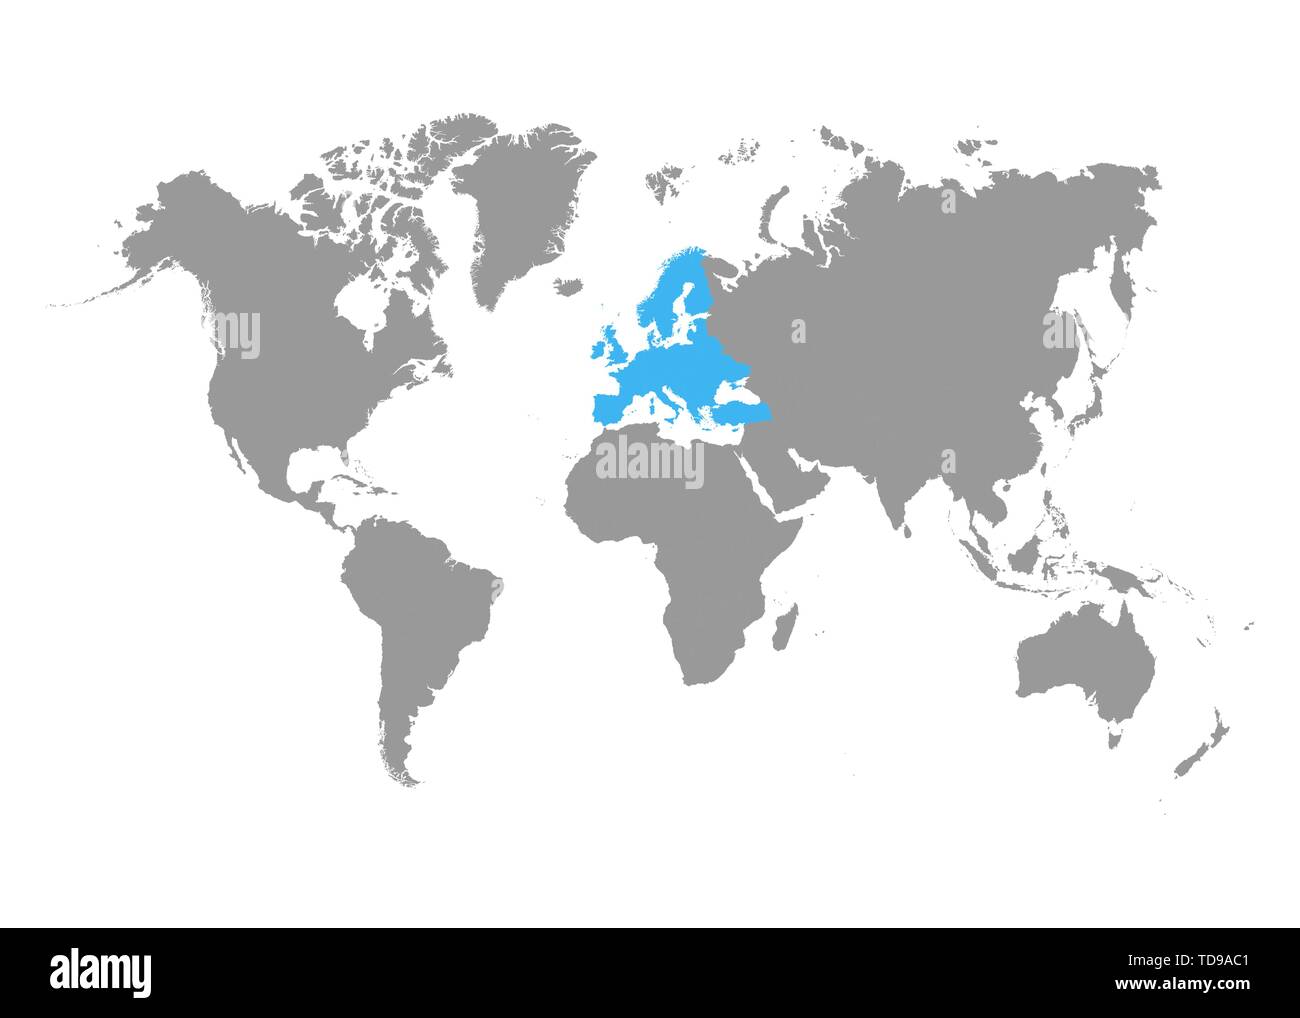 Europa mappa selezionata sulla mappa del mondo. Vettore Illustrazione Vettoriale